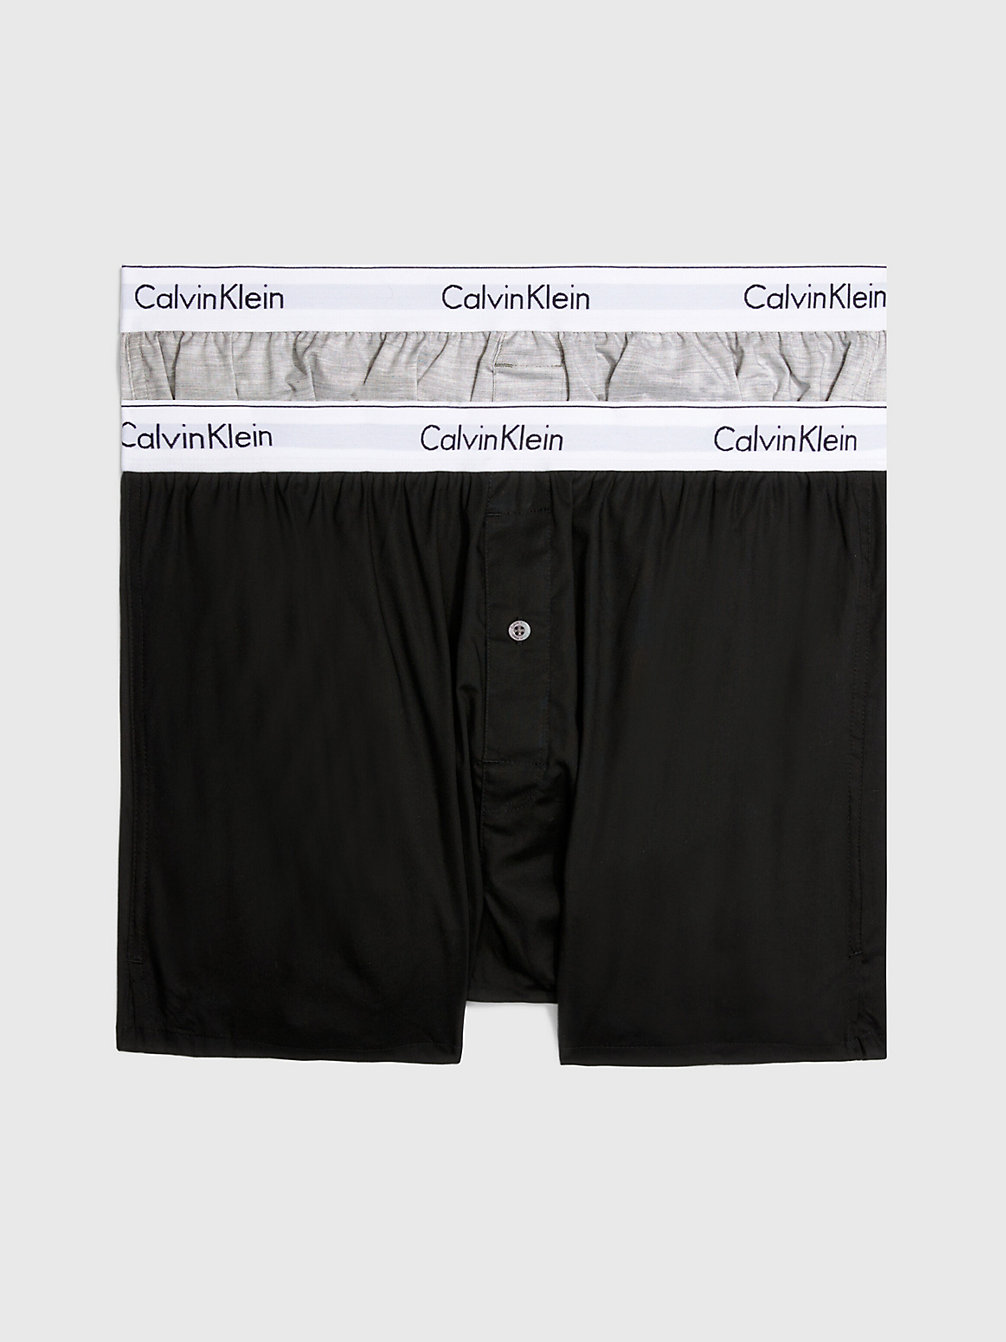 BLACK/GREY HEATHER 2 Pack Slim Fit Boxers - Modern Cotton undefined men Calvin Klein